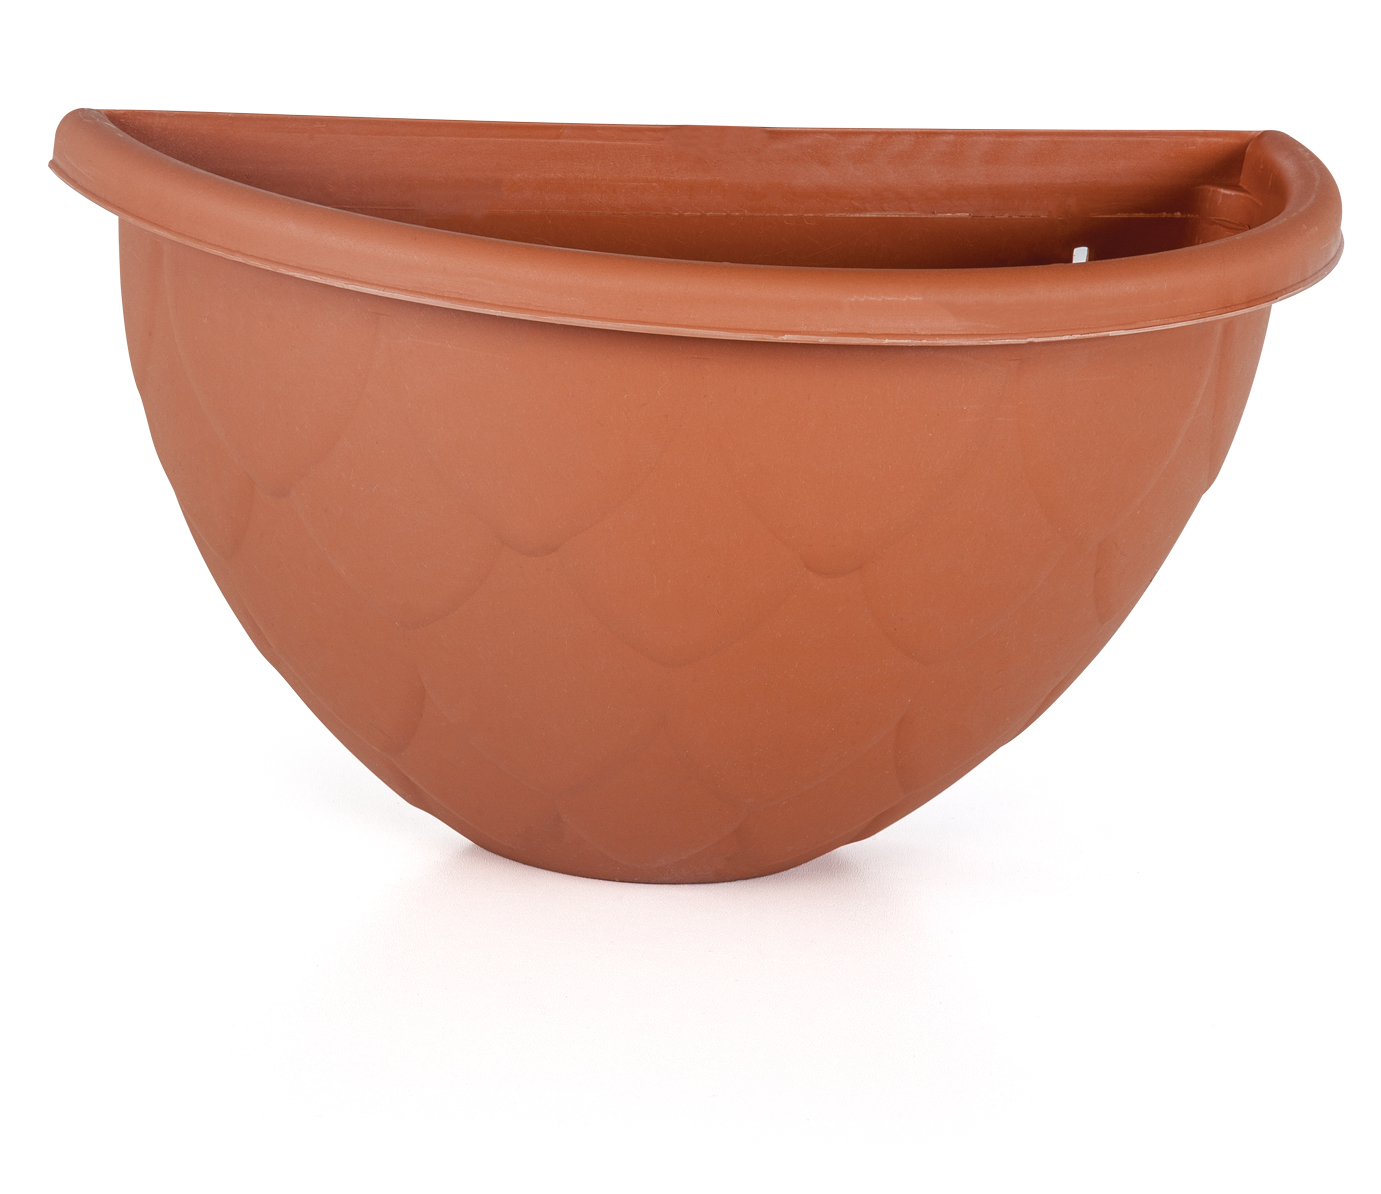 Buy Plastic Pot Dd02 - 2.4ltr Online | Agriculture Gardening Tools | Qetaat.com